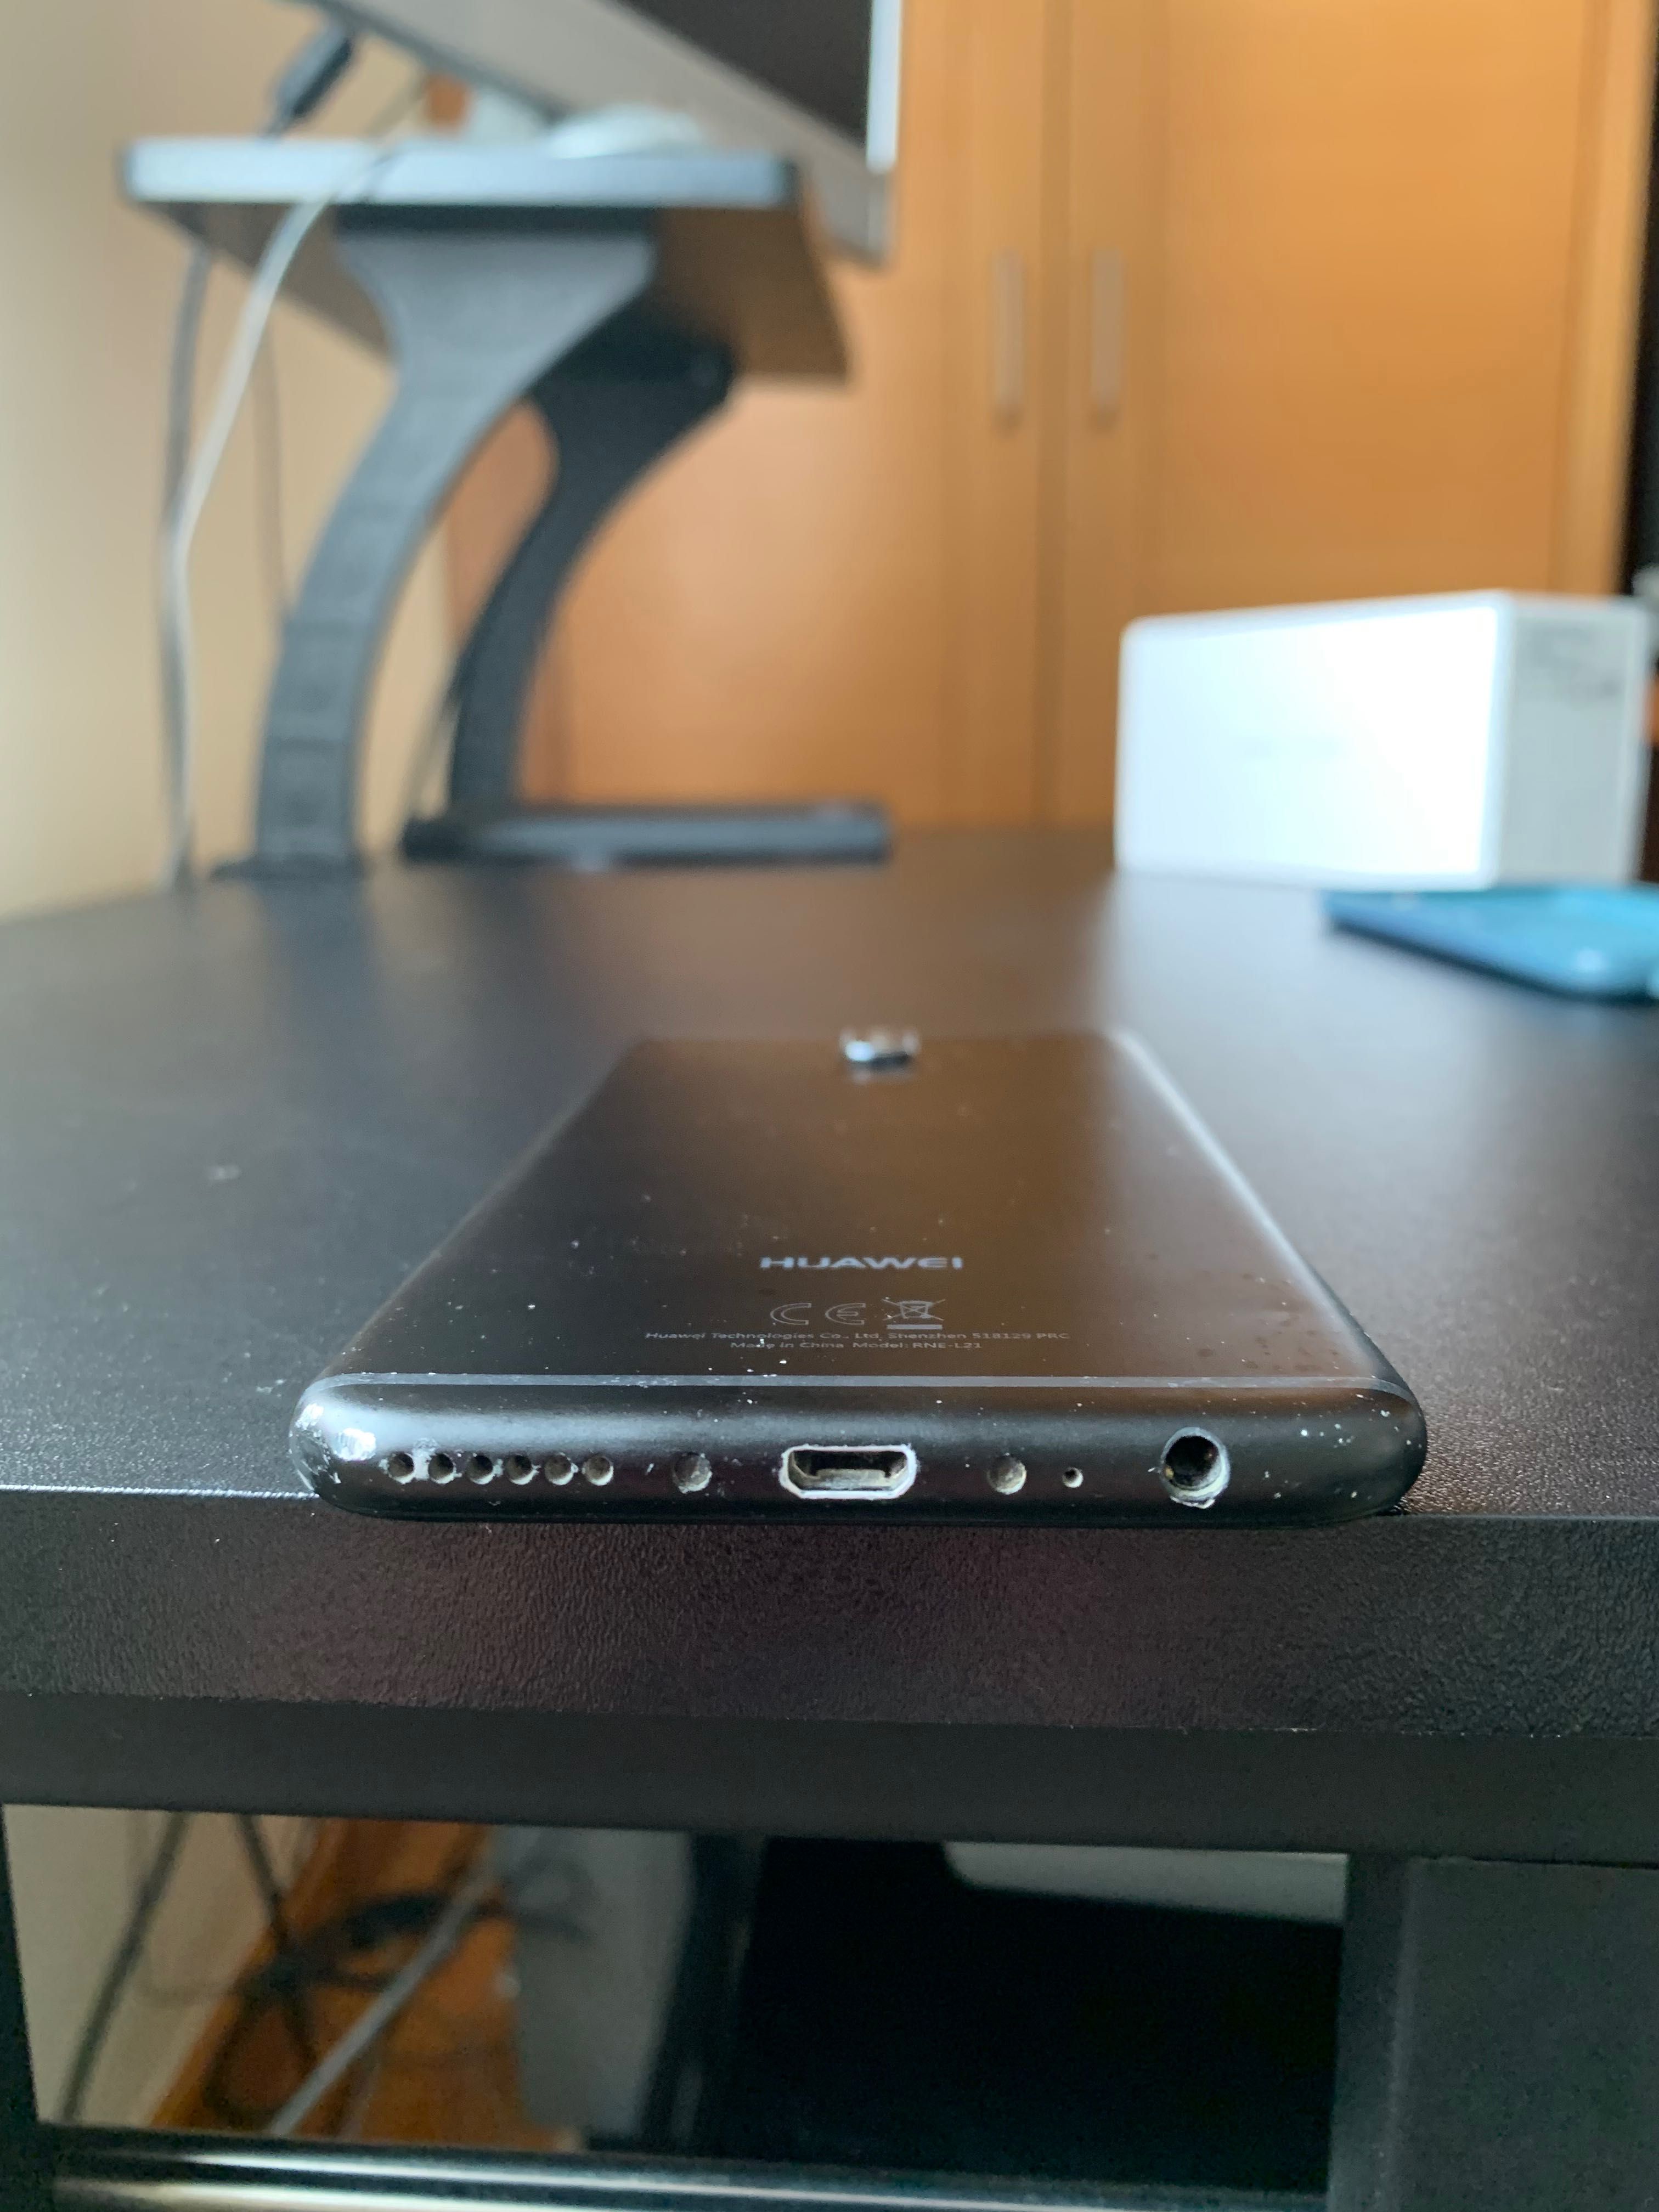 Huawei Mate 10 Lite com caixa e acessórios de origem